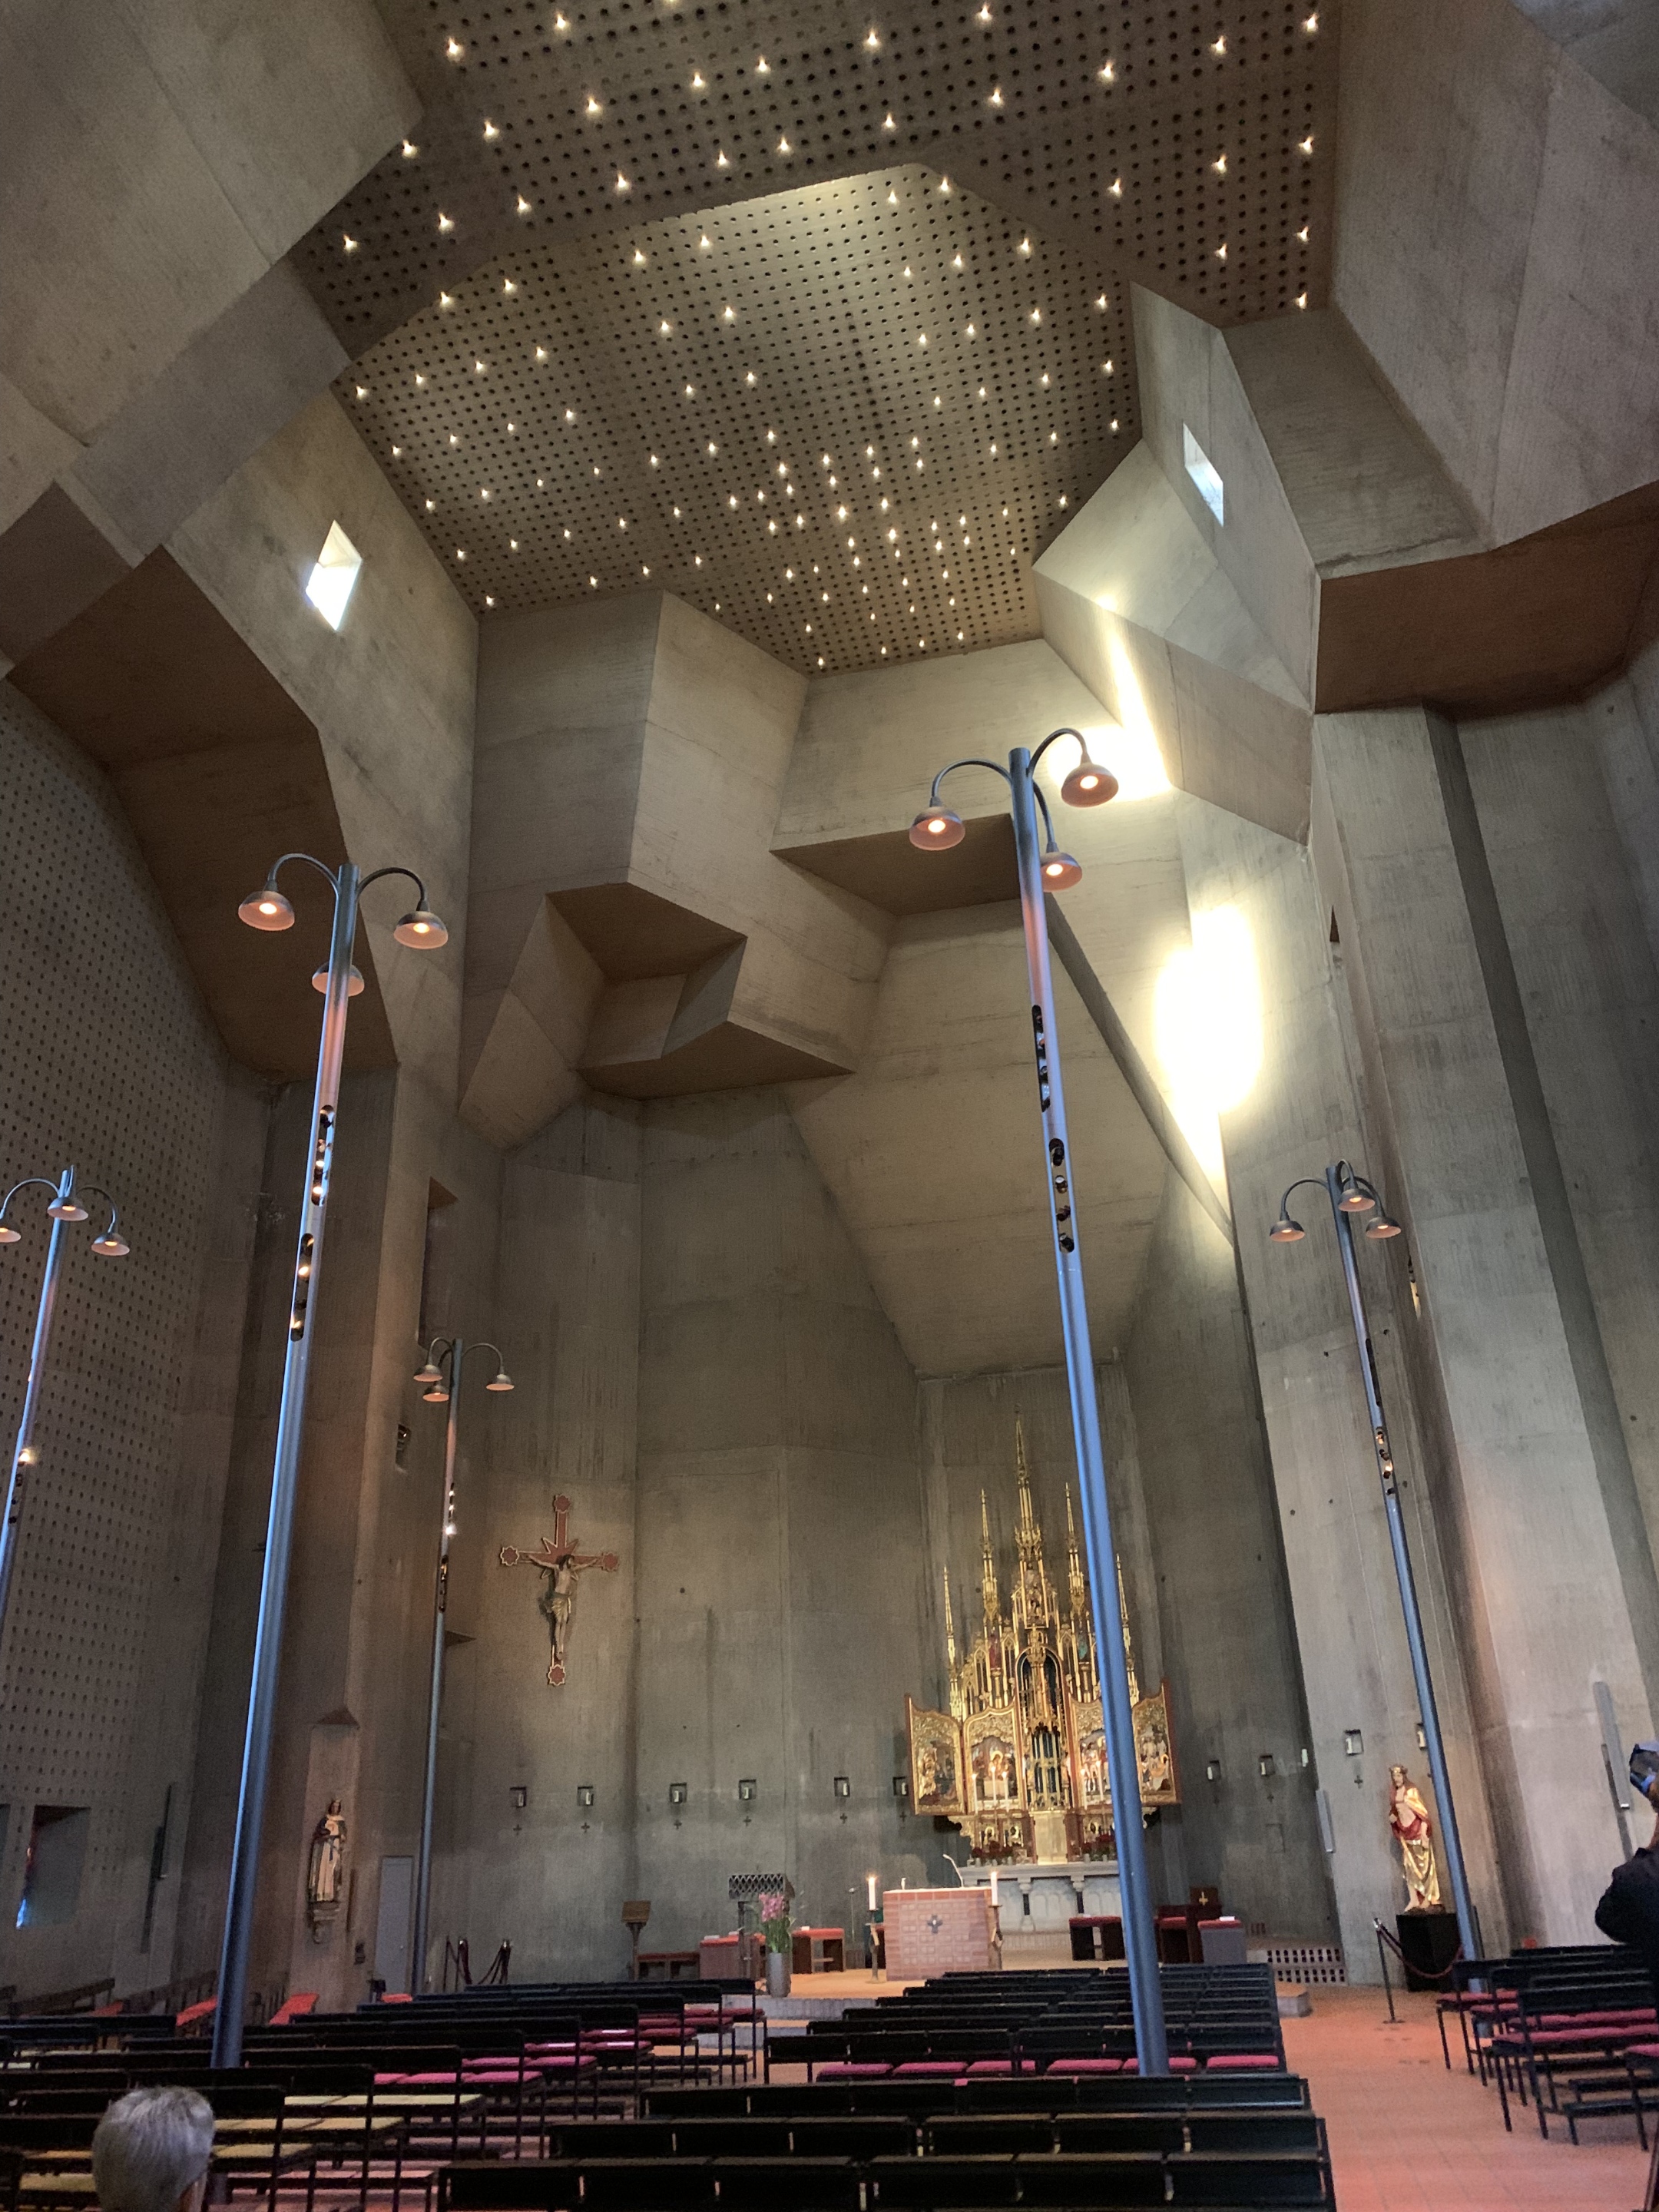 Kleeblattförmige Leuchten sowie ein 'Sternenhimmel' zeichnen das neue Lichtkonzept der Pfarrkirche St. Ludwig von Gottfried Böhm aus. Foto: Ute Kirch